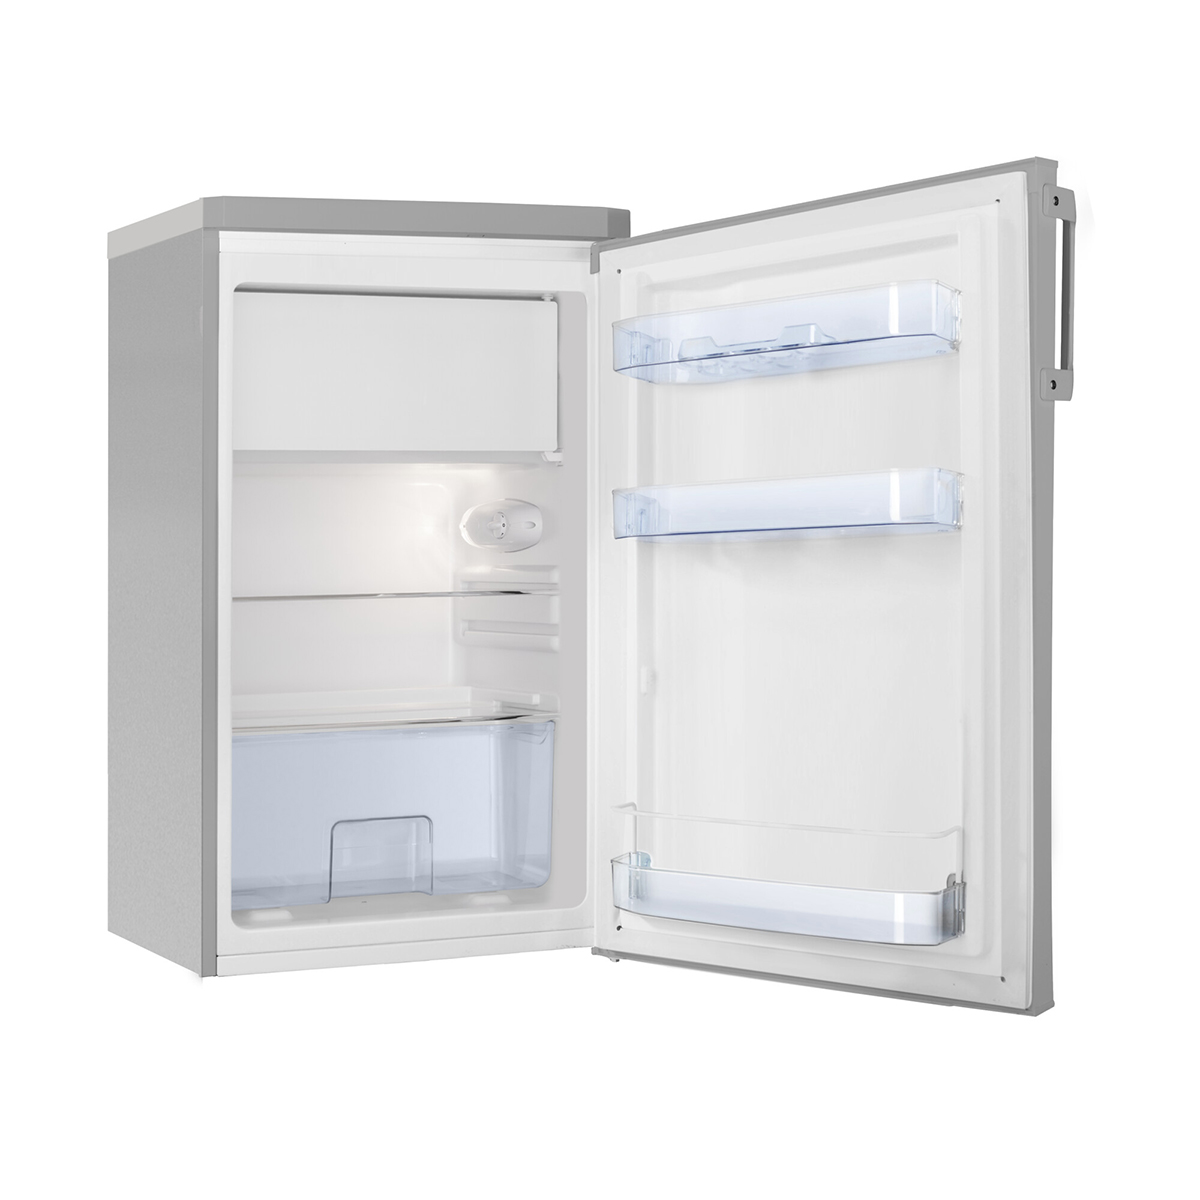 silber Kühlschrank Kühlschrank hoch, AMICA Bürokühlschrank mit Gefrierfach 850 mm (D, silber) 108L